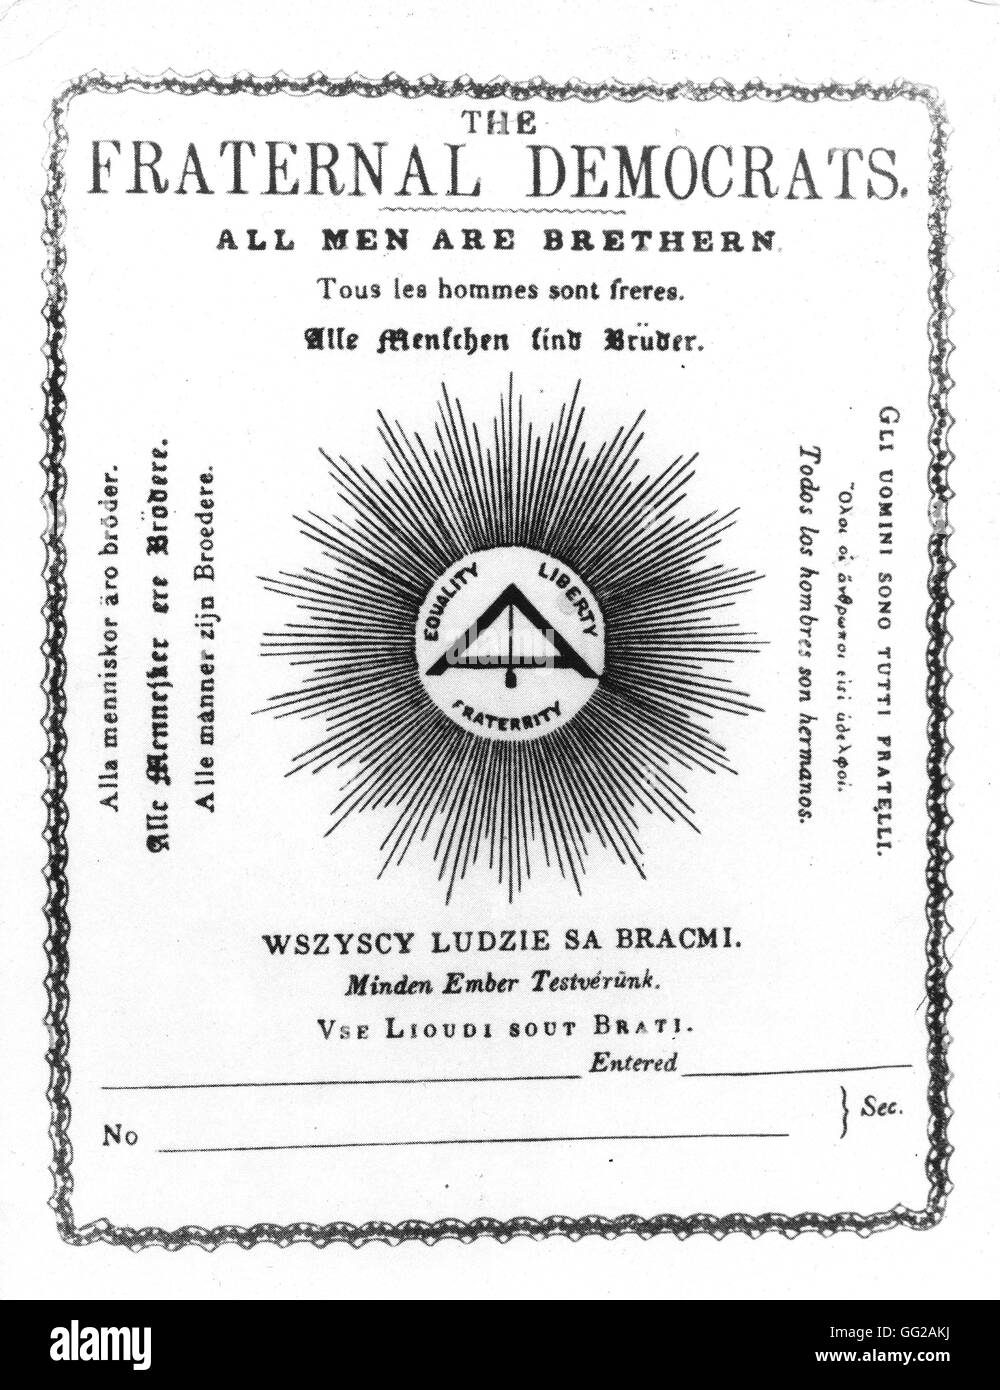 Formulaire d'adhésion pour l'Association 'Les démocrates fraternels', fondée sous l'influence de Marx et Engels 1845 Royaume-Uni Karl Marx Haus Banque D'Images